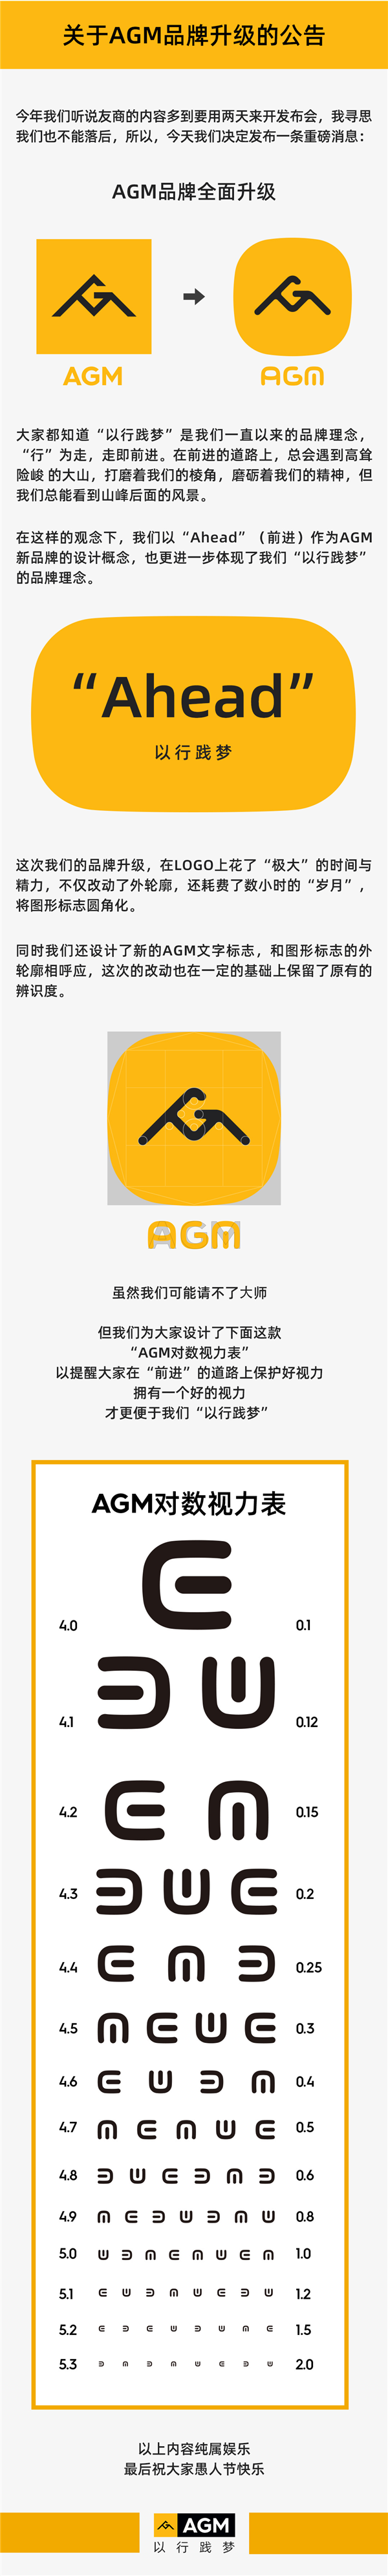 小米公布新Logo后 AGM愚人节开玩笑：Logo也跟着变了